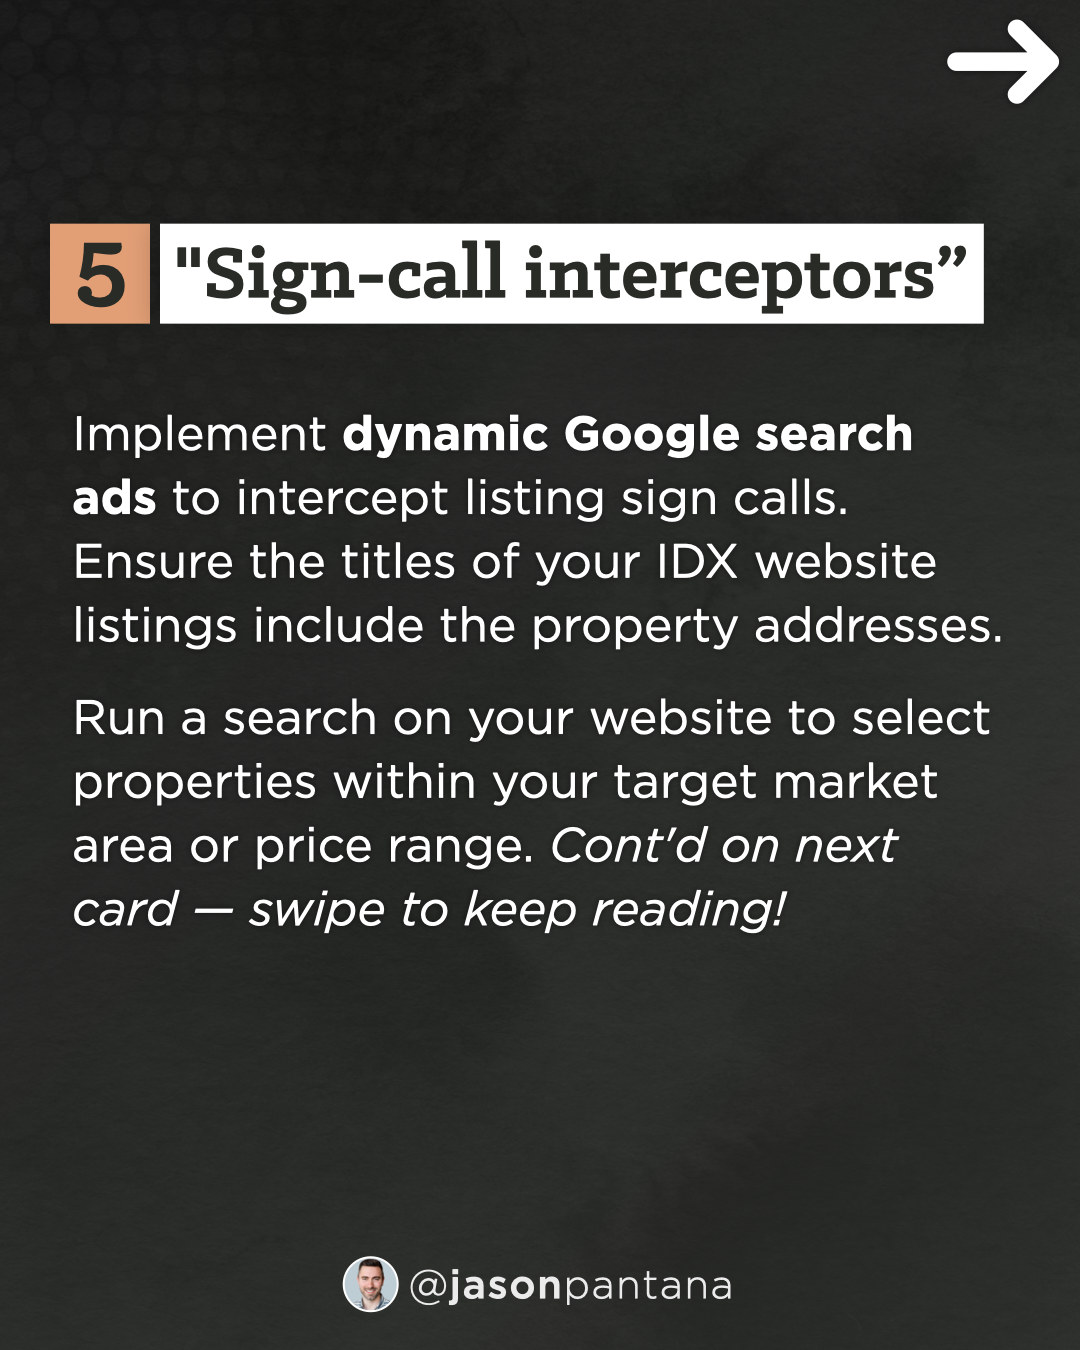 5a - Sign-call interceptors.png